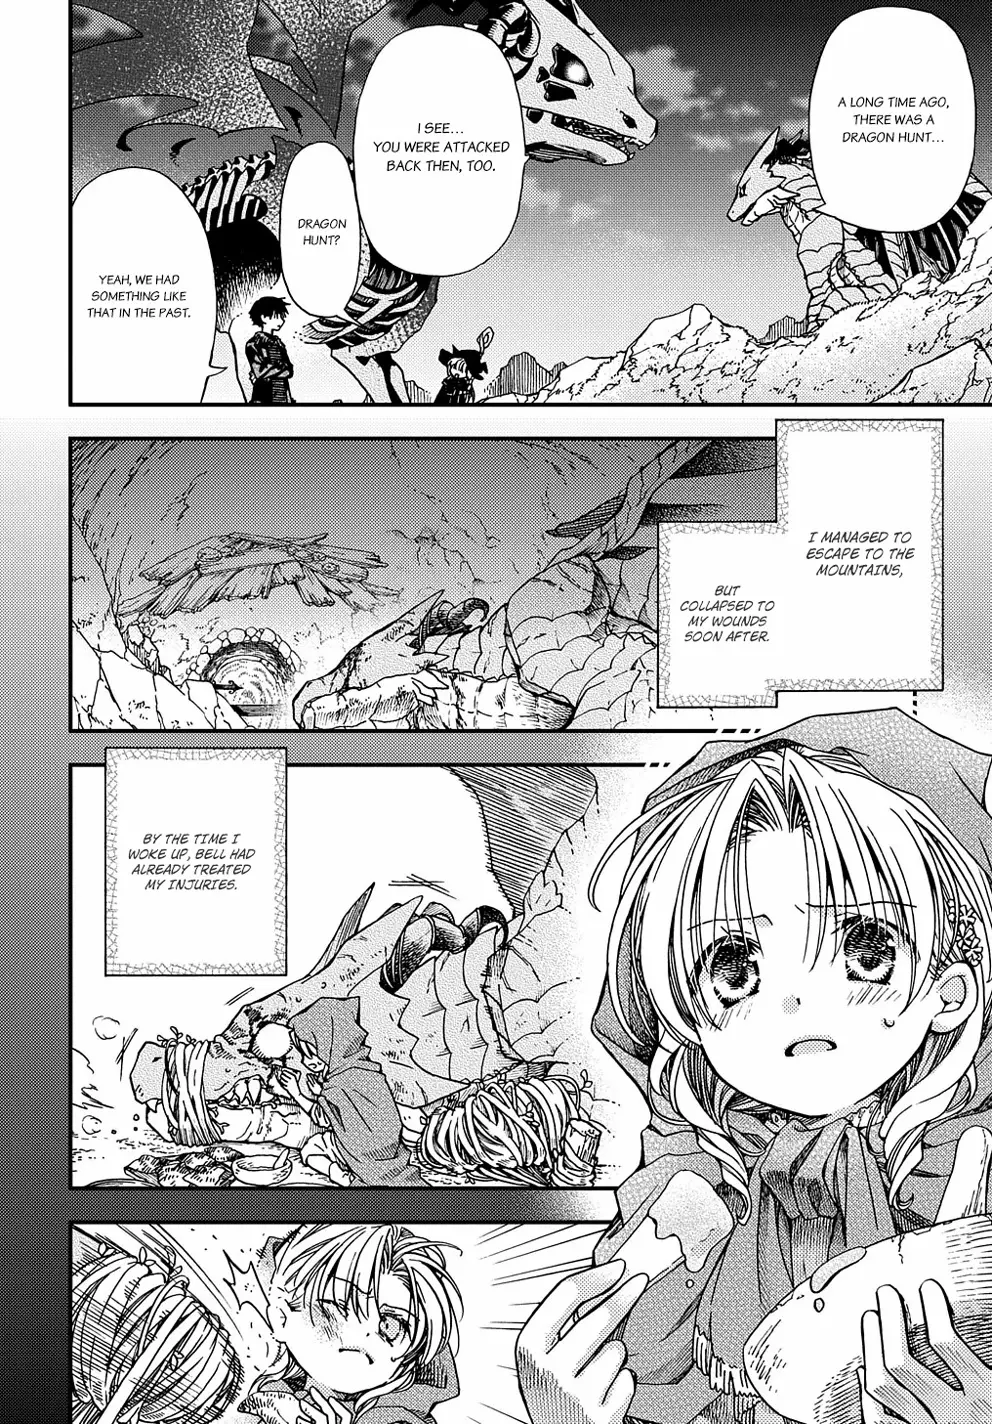 Hone Dragon No Mana Musume - 6 page 9-8715e4a1